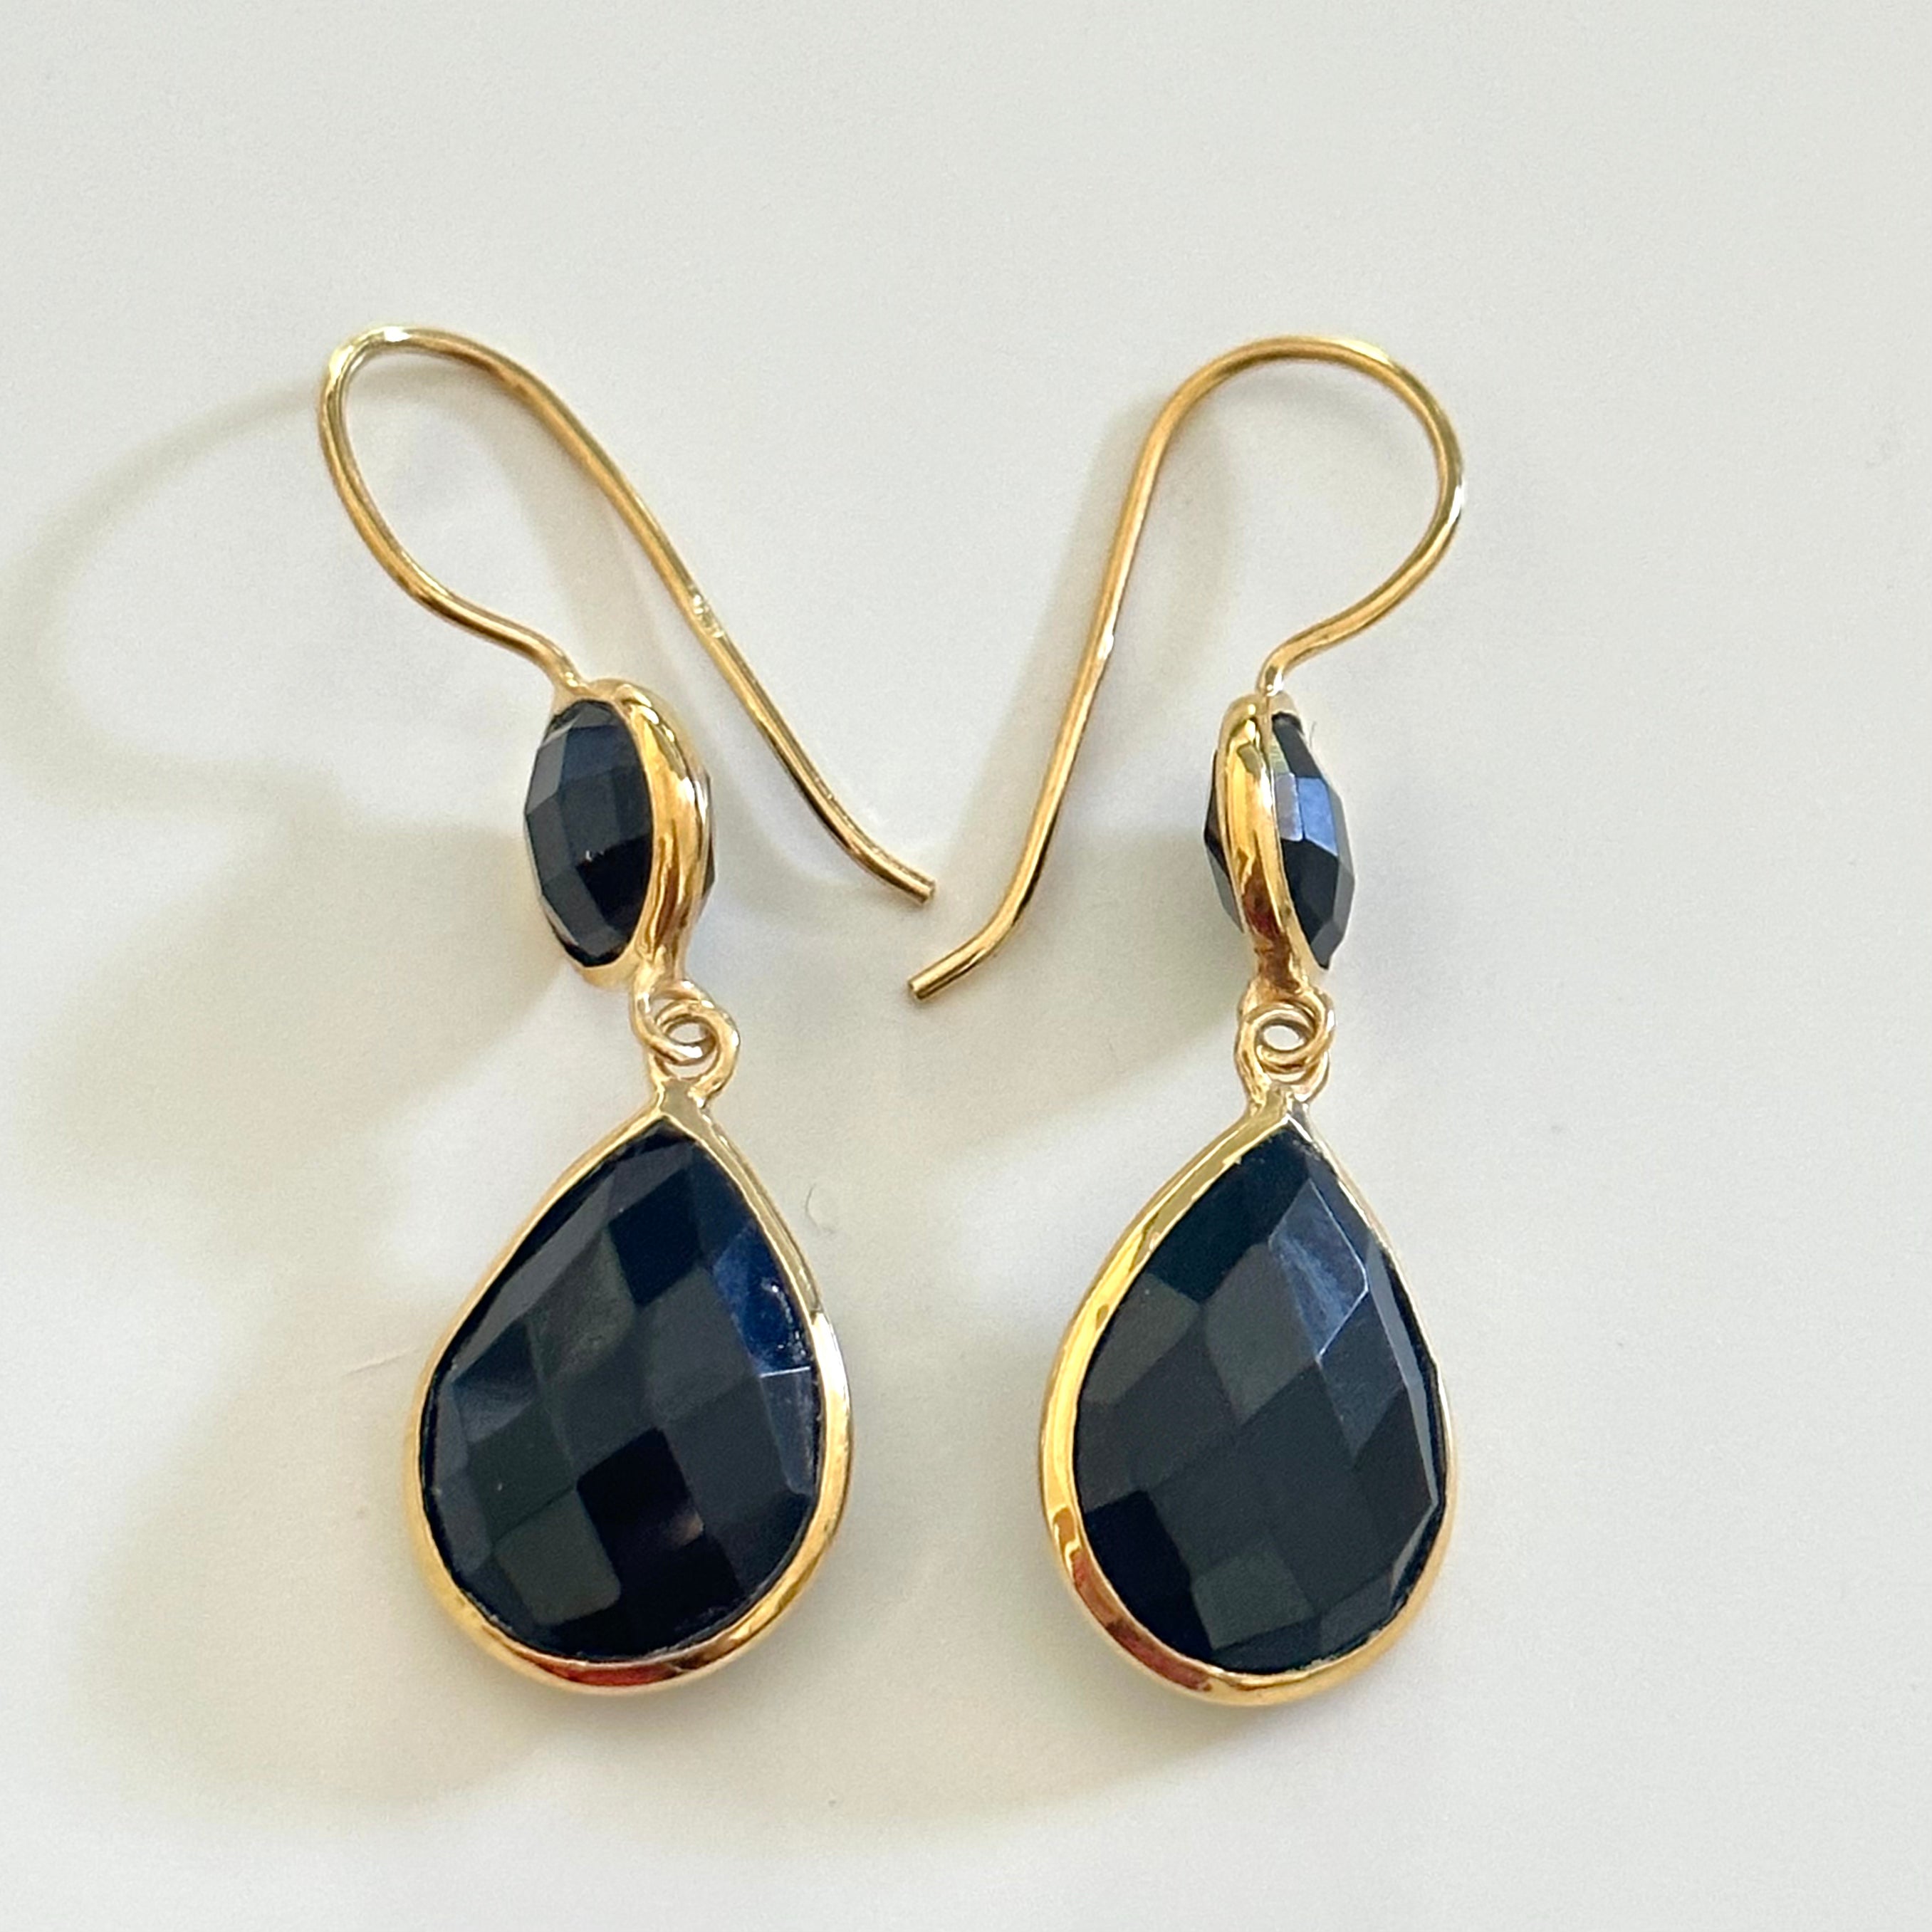 Black Onyx Gemstone Two Stone Earrings in Gold Plated Sterling Silver - Teardrop